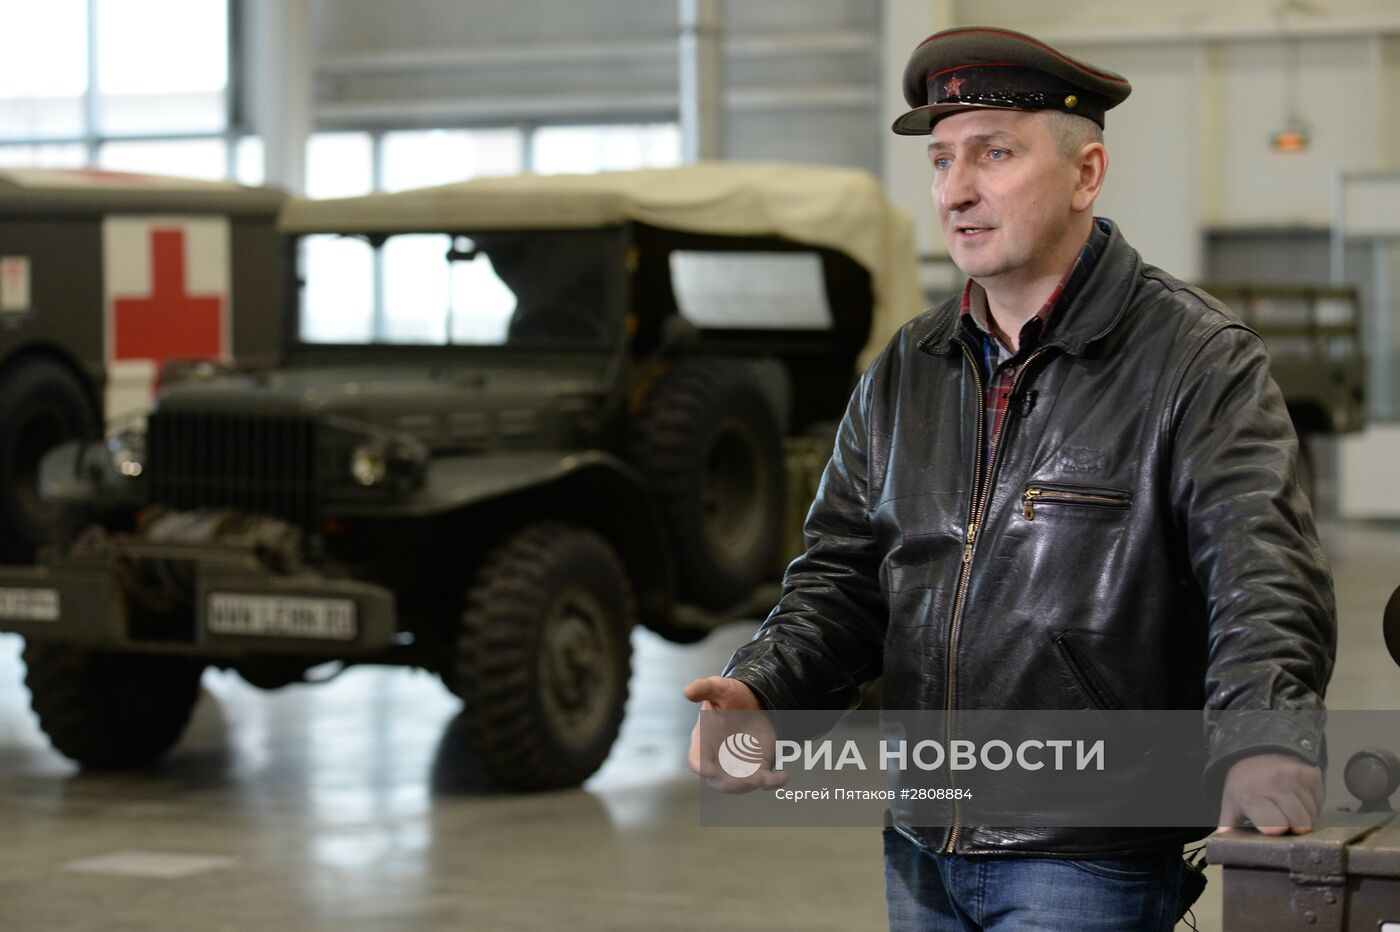 Подготовка к открытию выставки исторической военной техники "Моторы Войны"